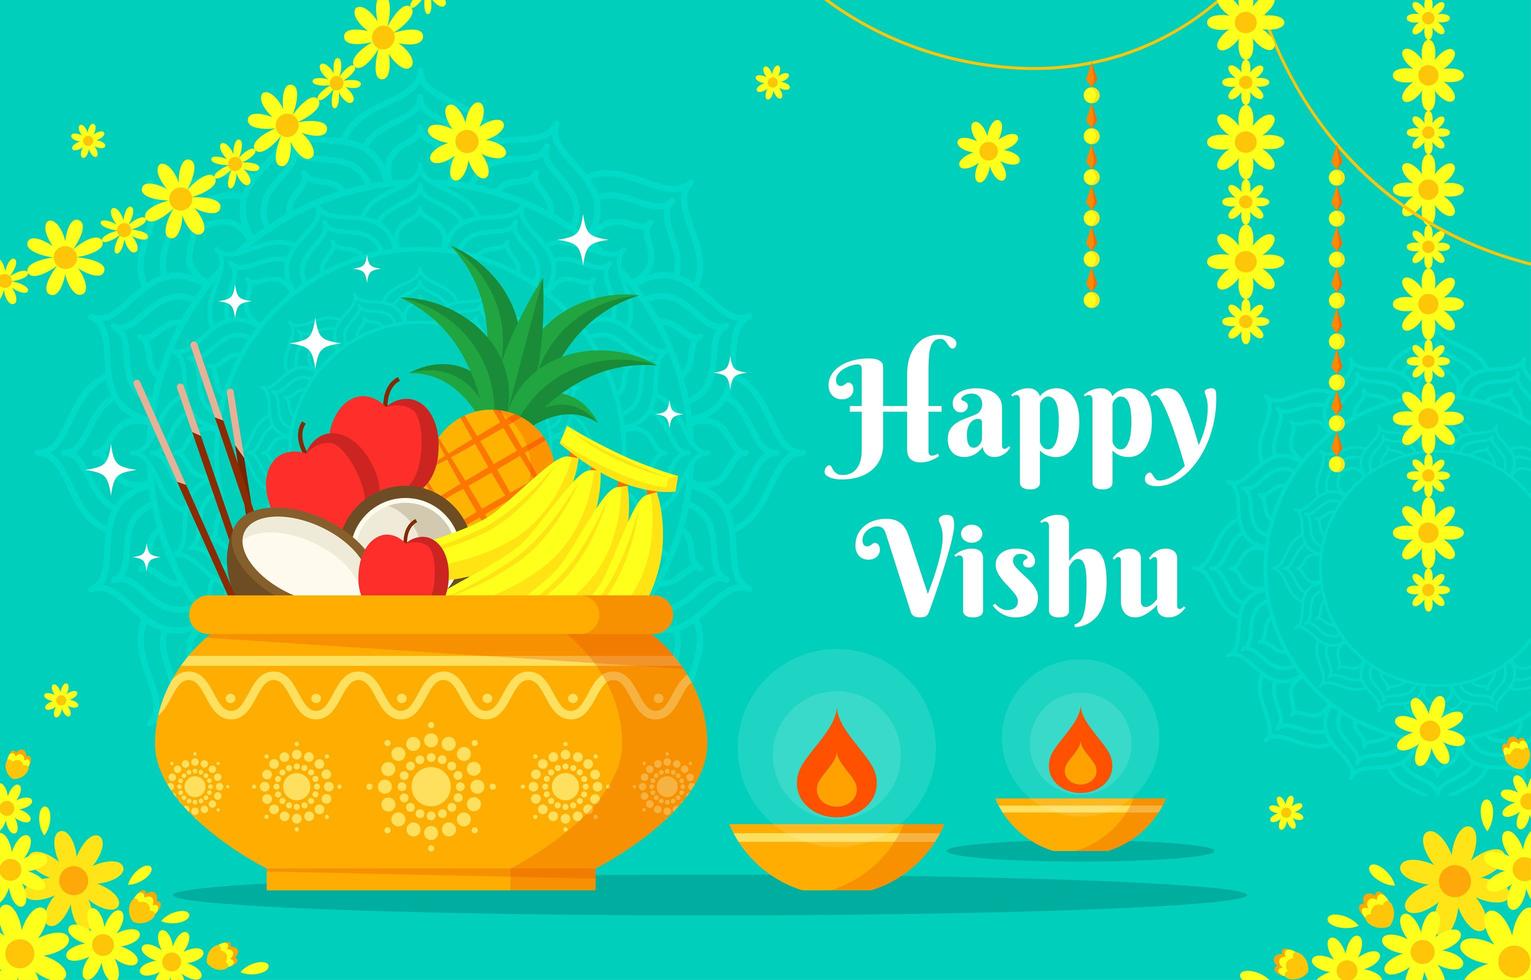 Happy Vishu Background Design 2282899 Vector Art at Vecteezy